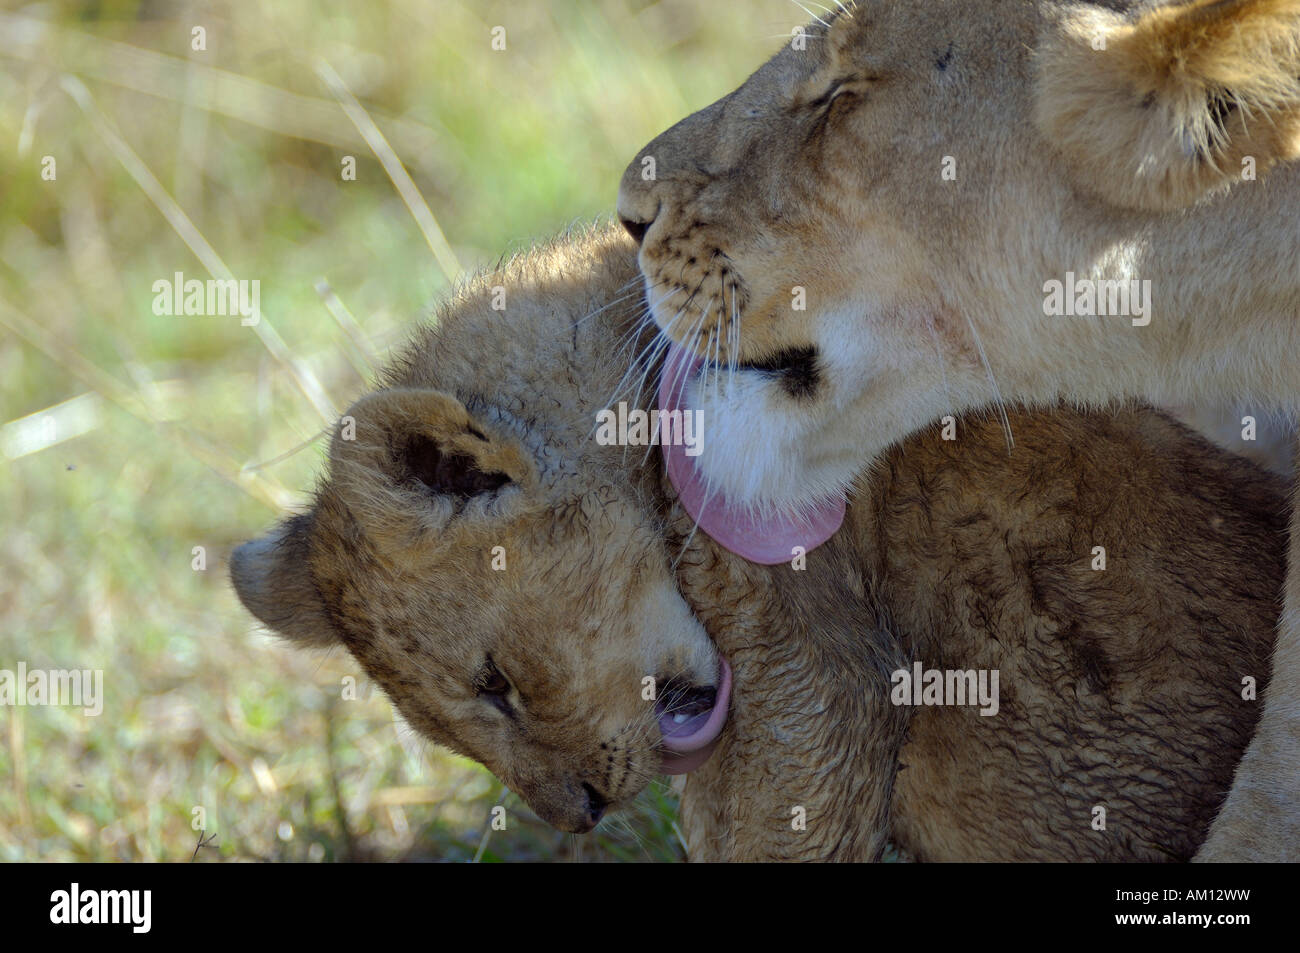 Lion (Panthera leo), lioness with cub, Masai Mara, Kenya Stock Photo